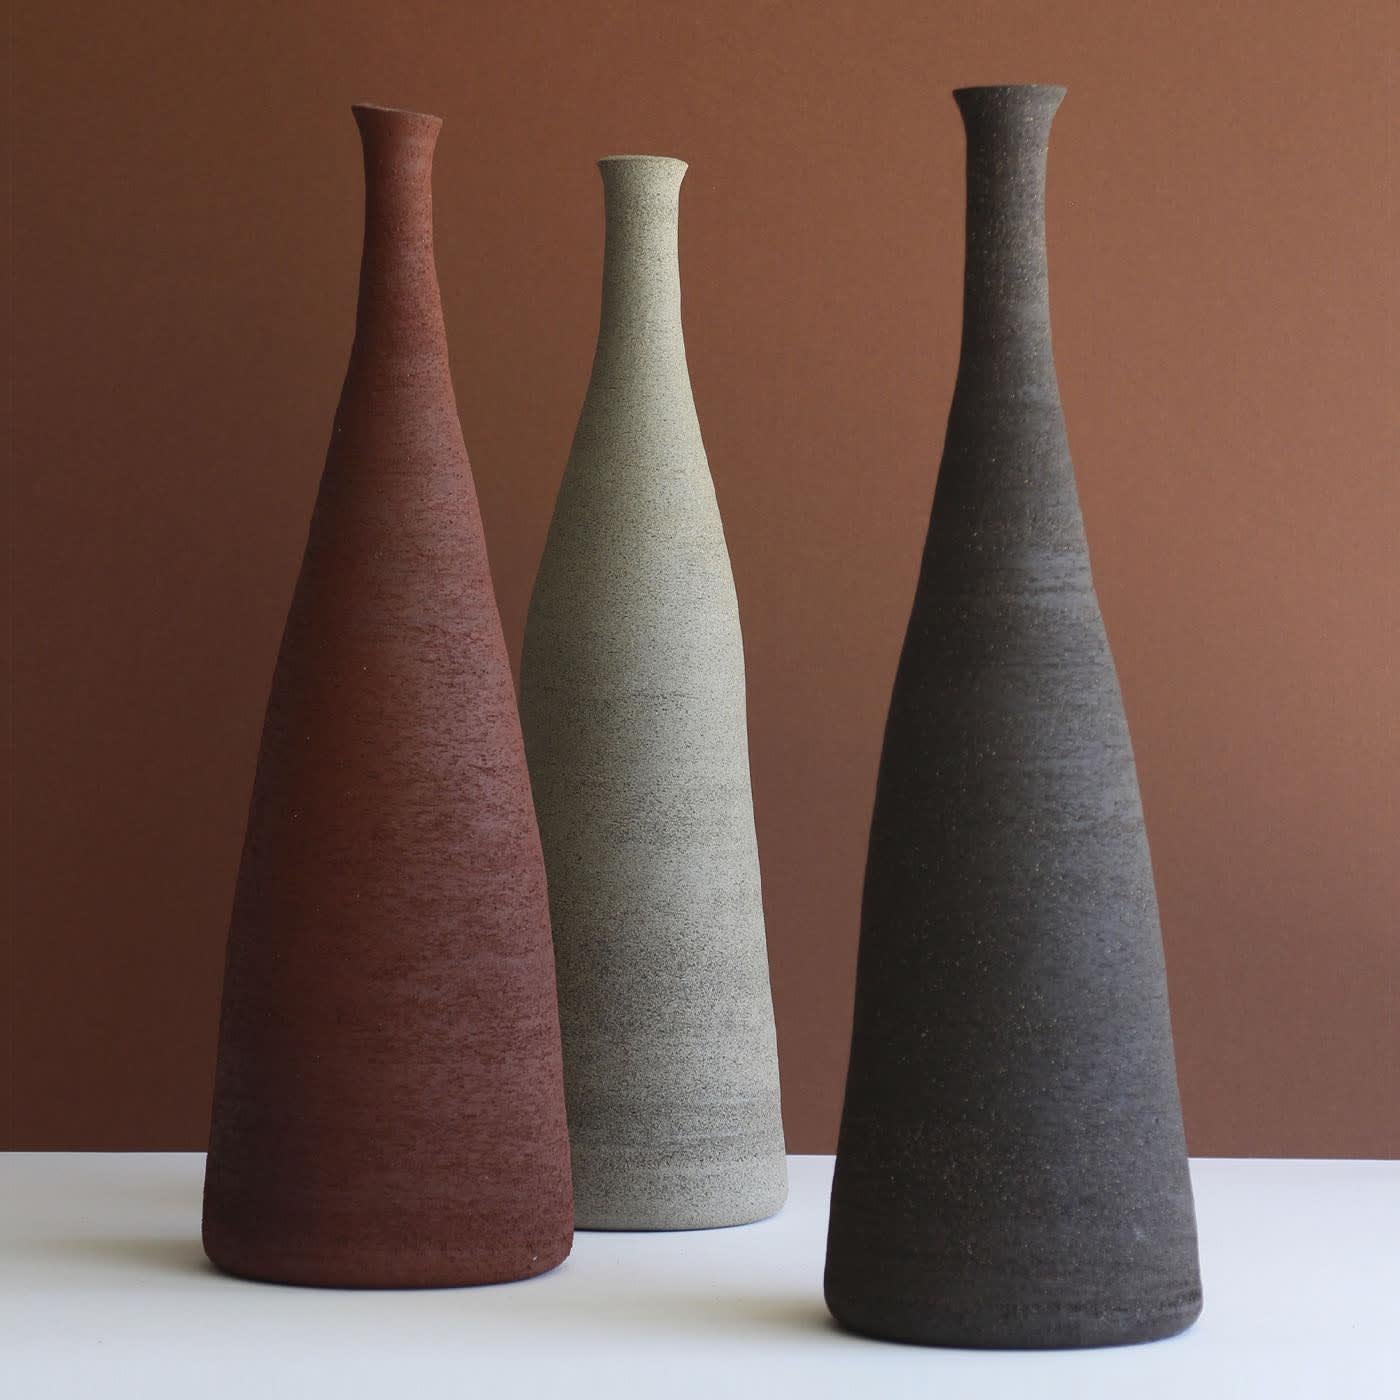 Harmonische Linien bestimmen die elegante Silhouette dieser flaschenartigen, dekorativen Vase aus Steinzeug, einem geduldig von Hand gefertigten Einzelstück, das wirklich einzigartig ist. Eine zerkratzte Textur verbindet sich tadellos mit dem